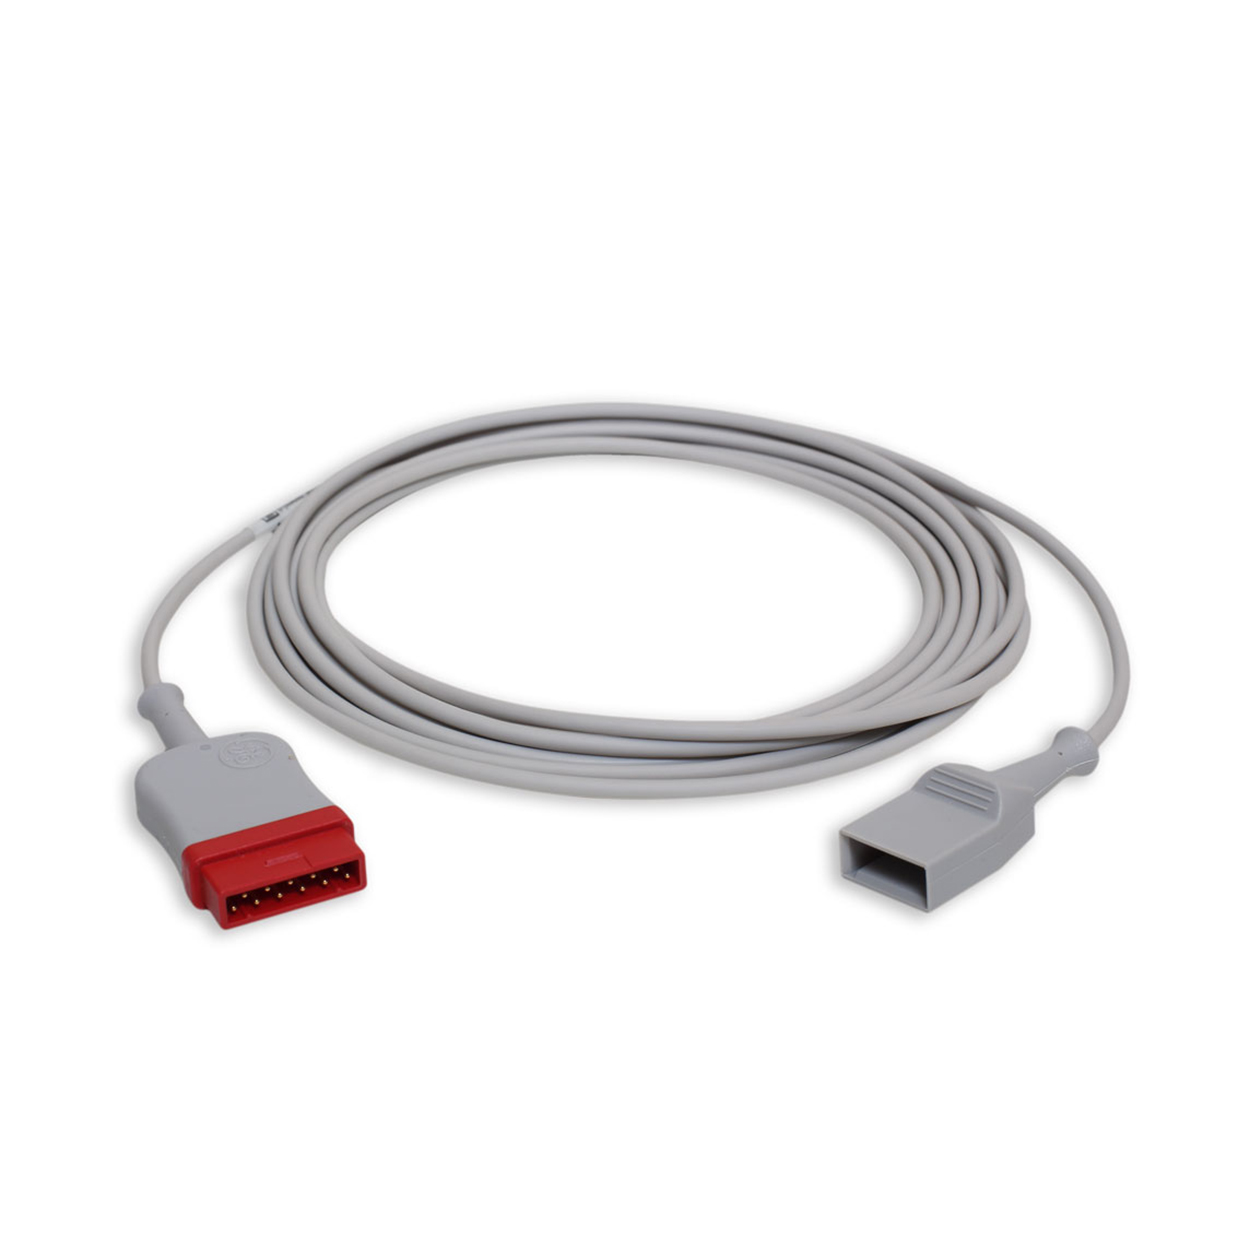 GE UTAH IBP adaptor cable